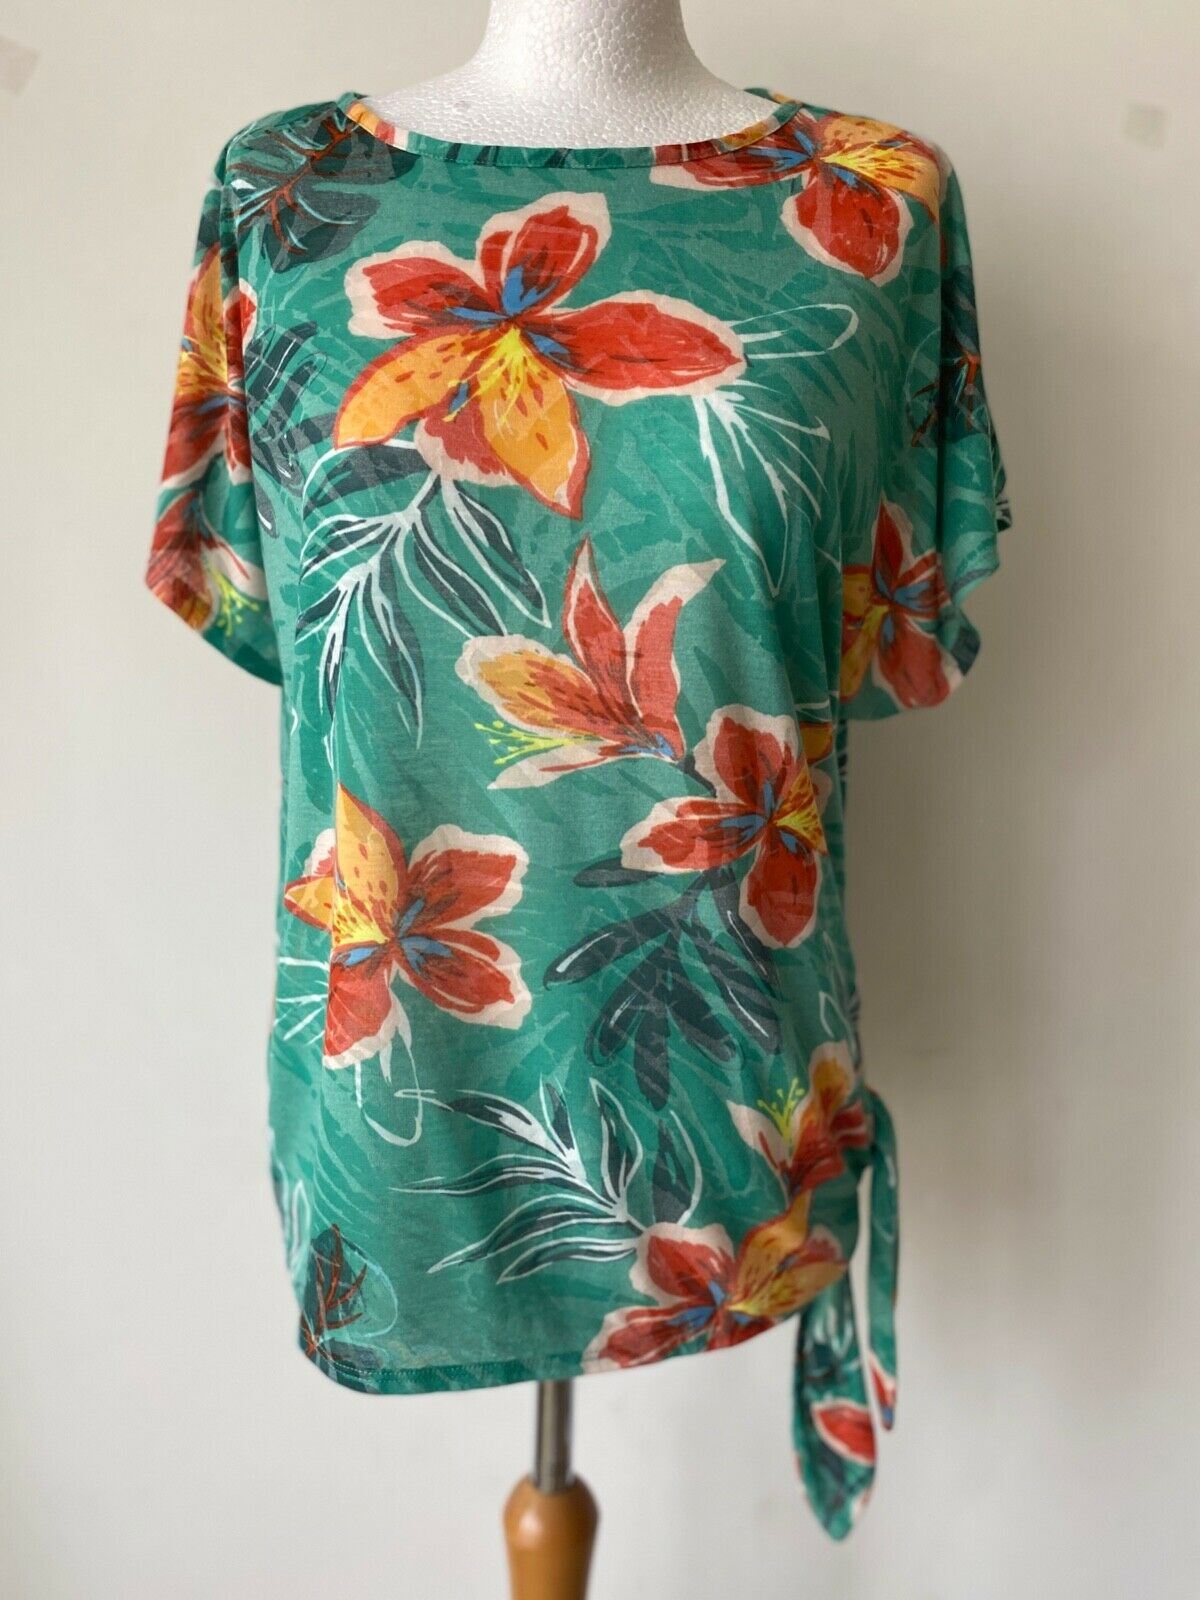 Bonmarche Tropical Print T-Shirt Side Tie Size 10 - Beagle Boutique Fashion Outlet